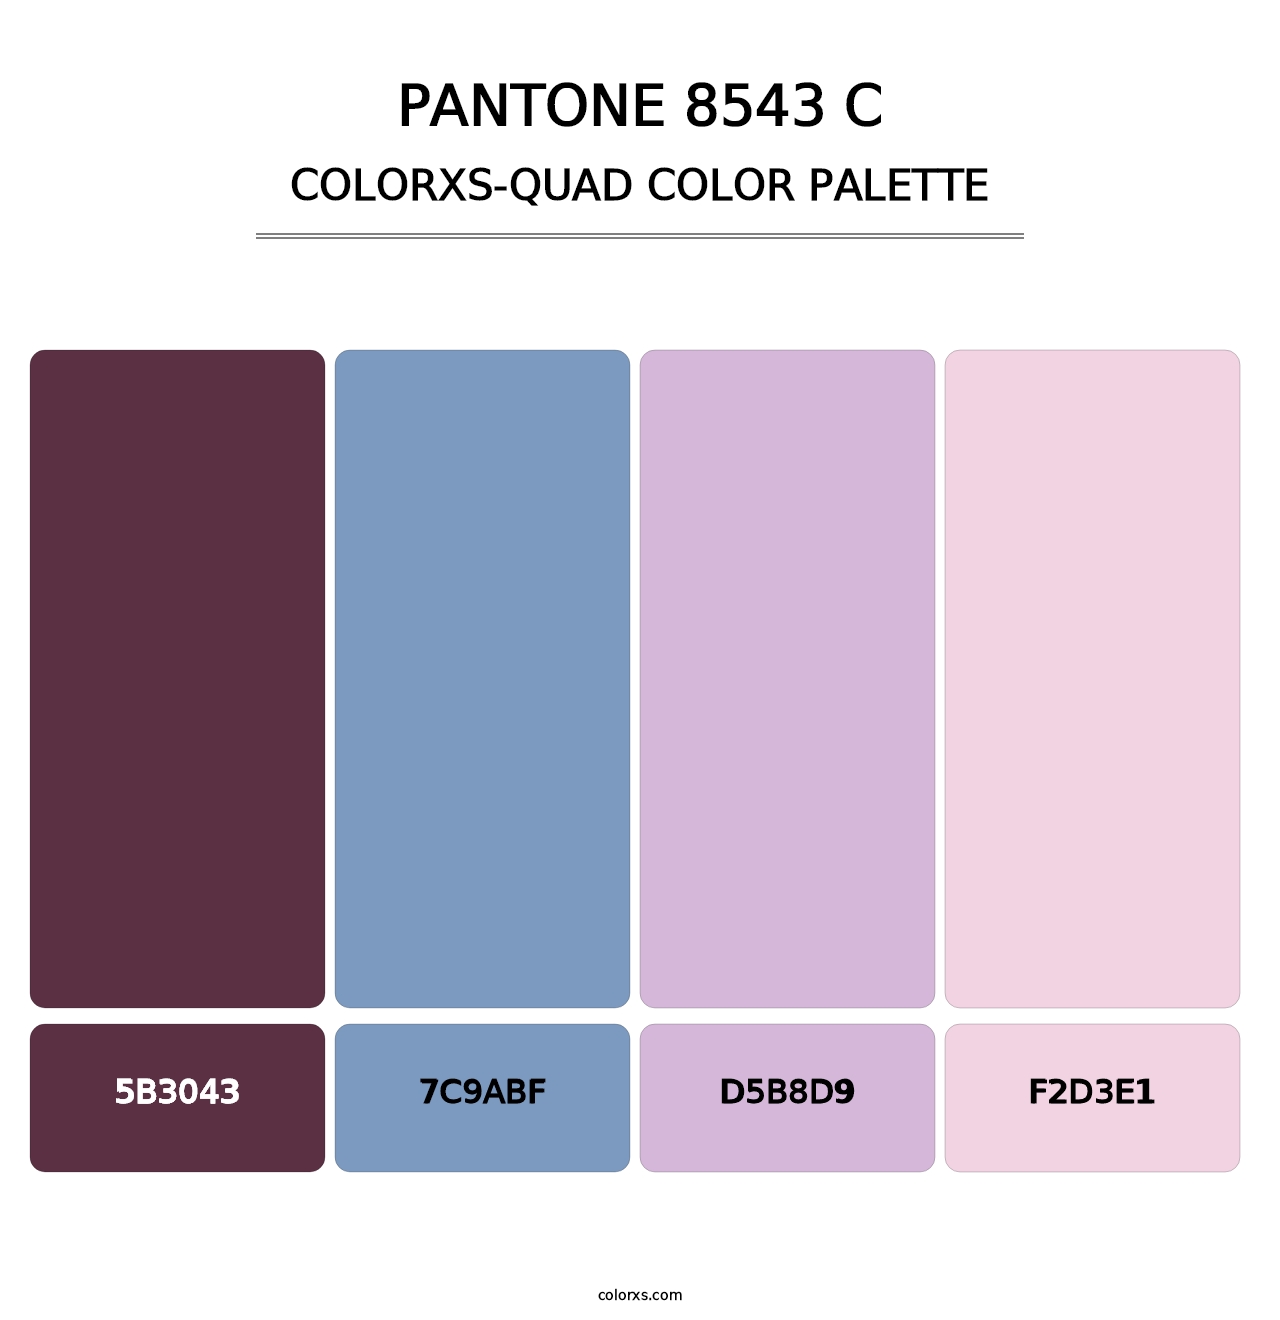 PANTONE 8543 C - Colorxs Quad Palette